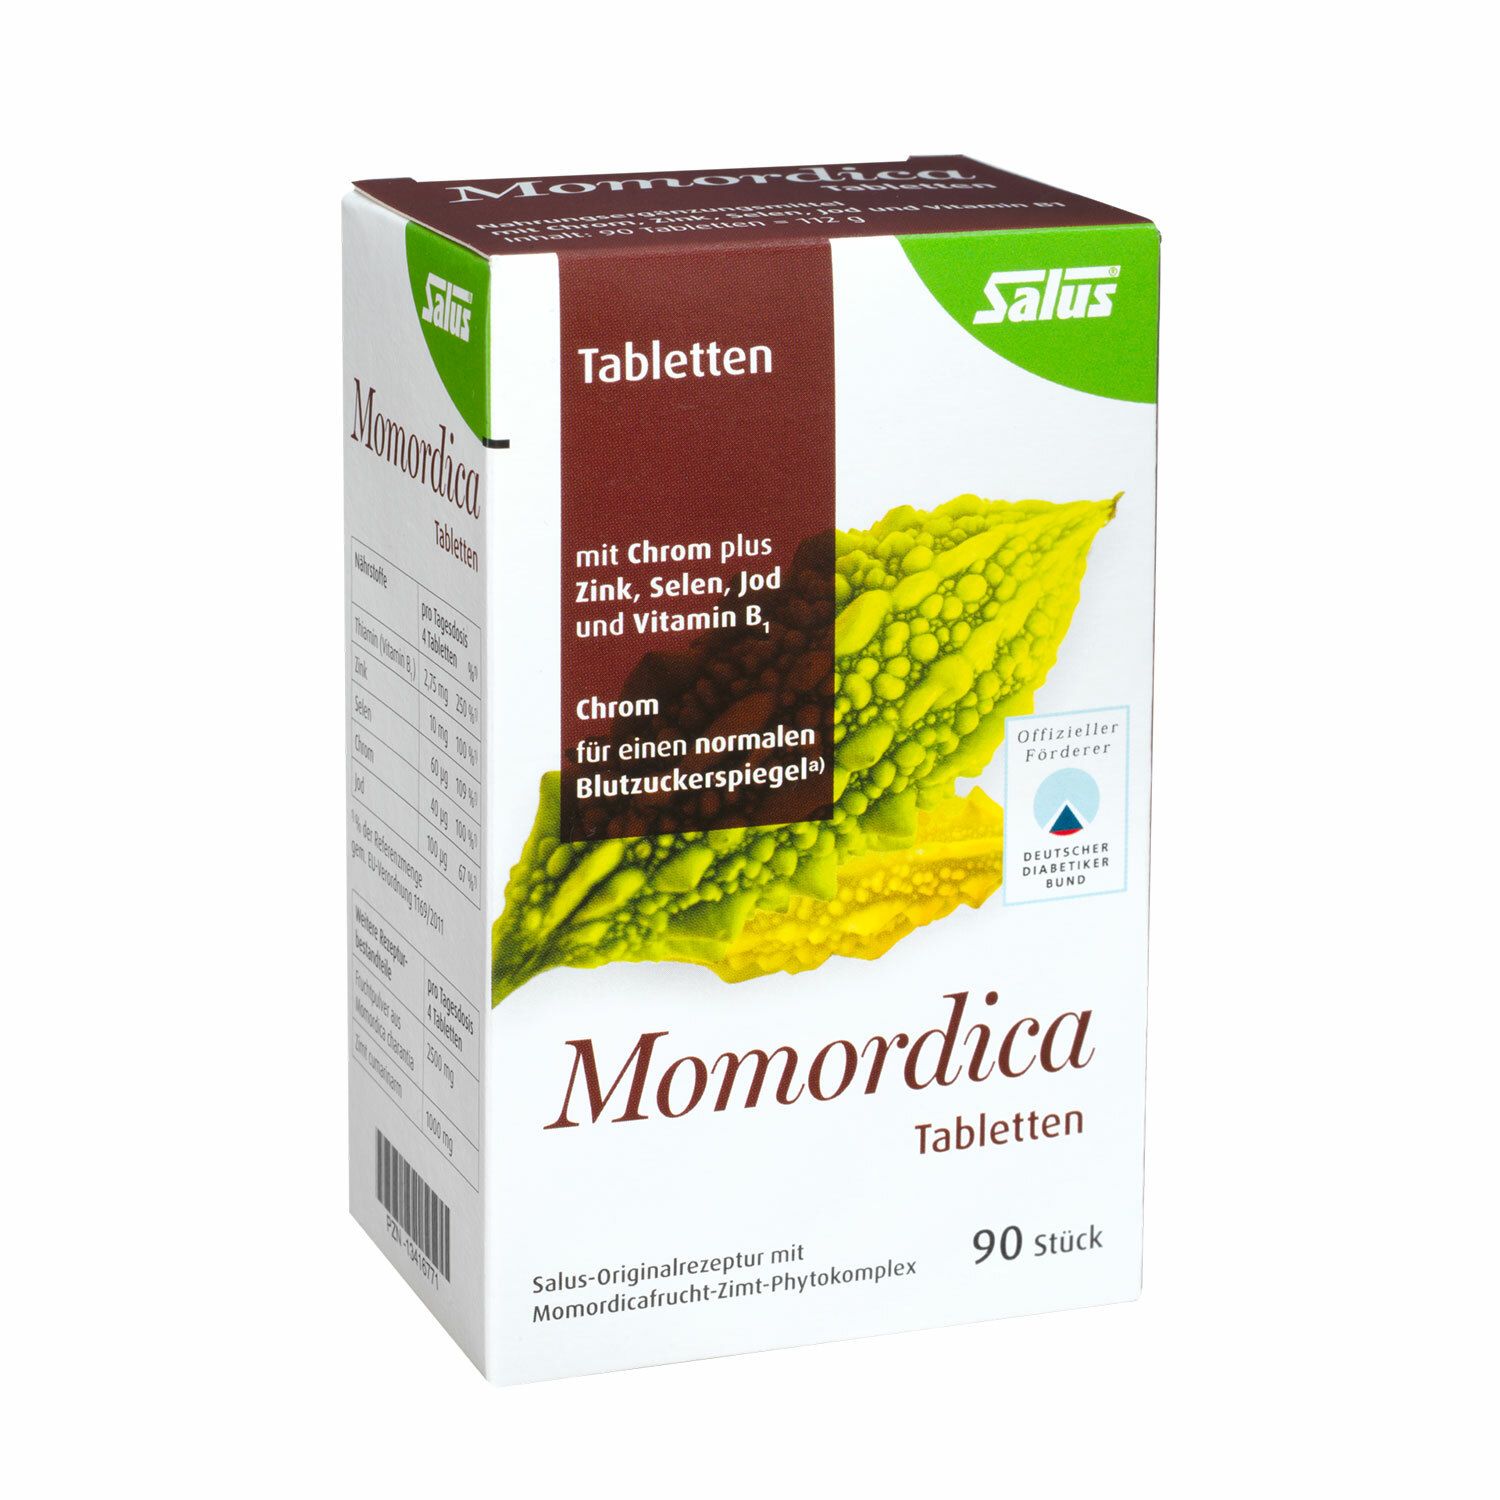 Salus® Momordica tablets